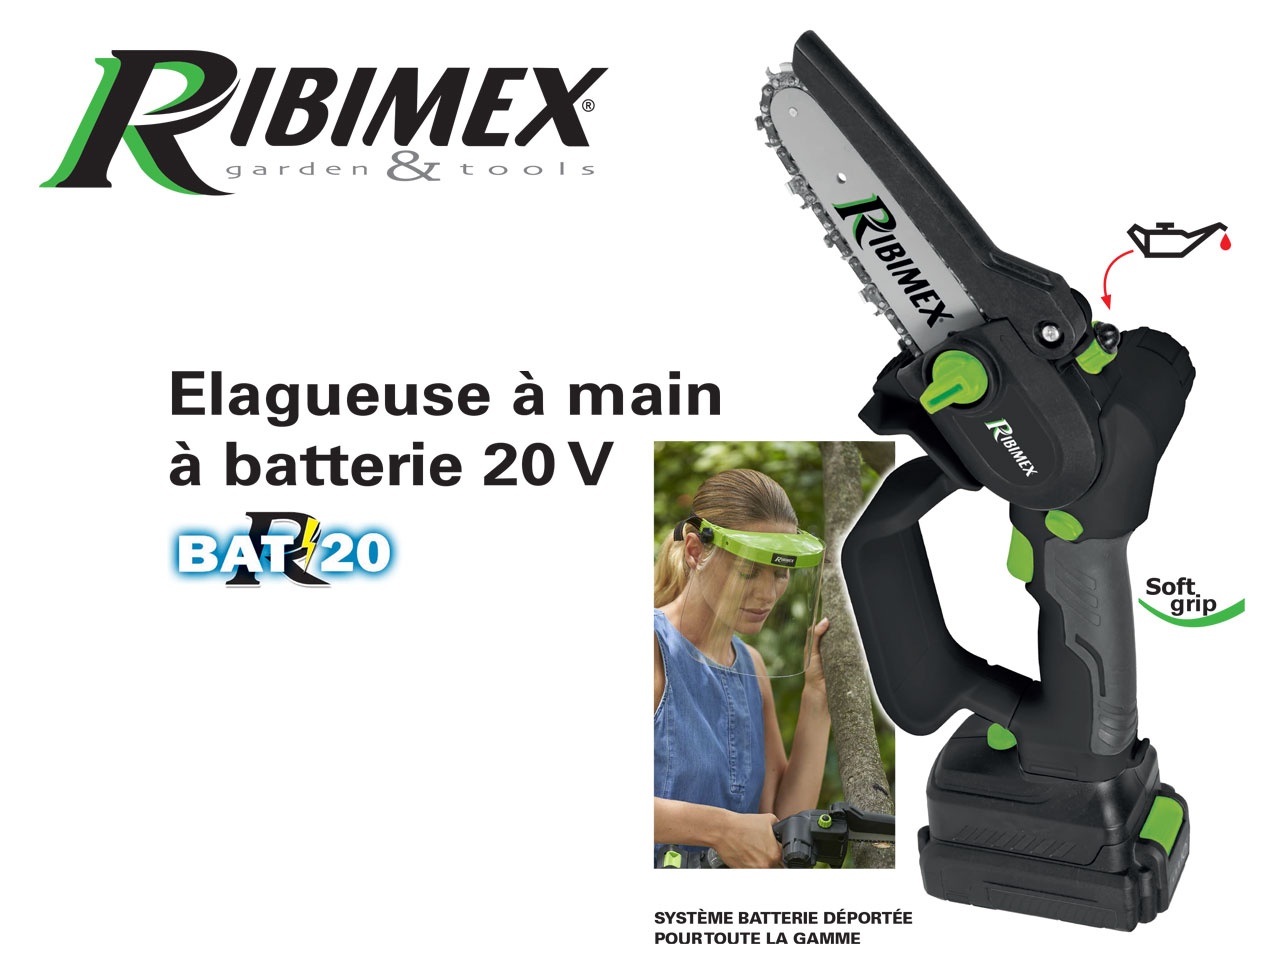 RIBIMEX Garden & Tools : Zoom sur l'Elagueuse à main à batterie 20